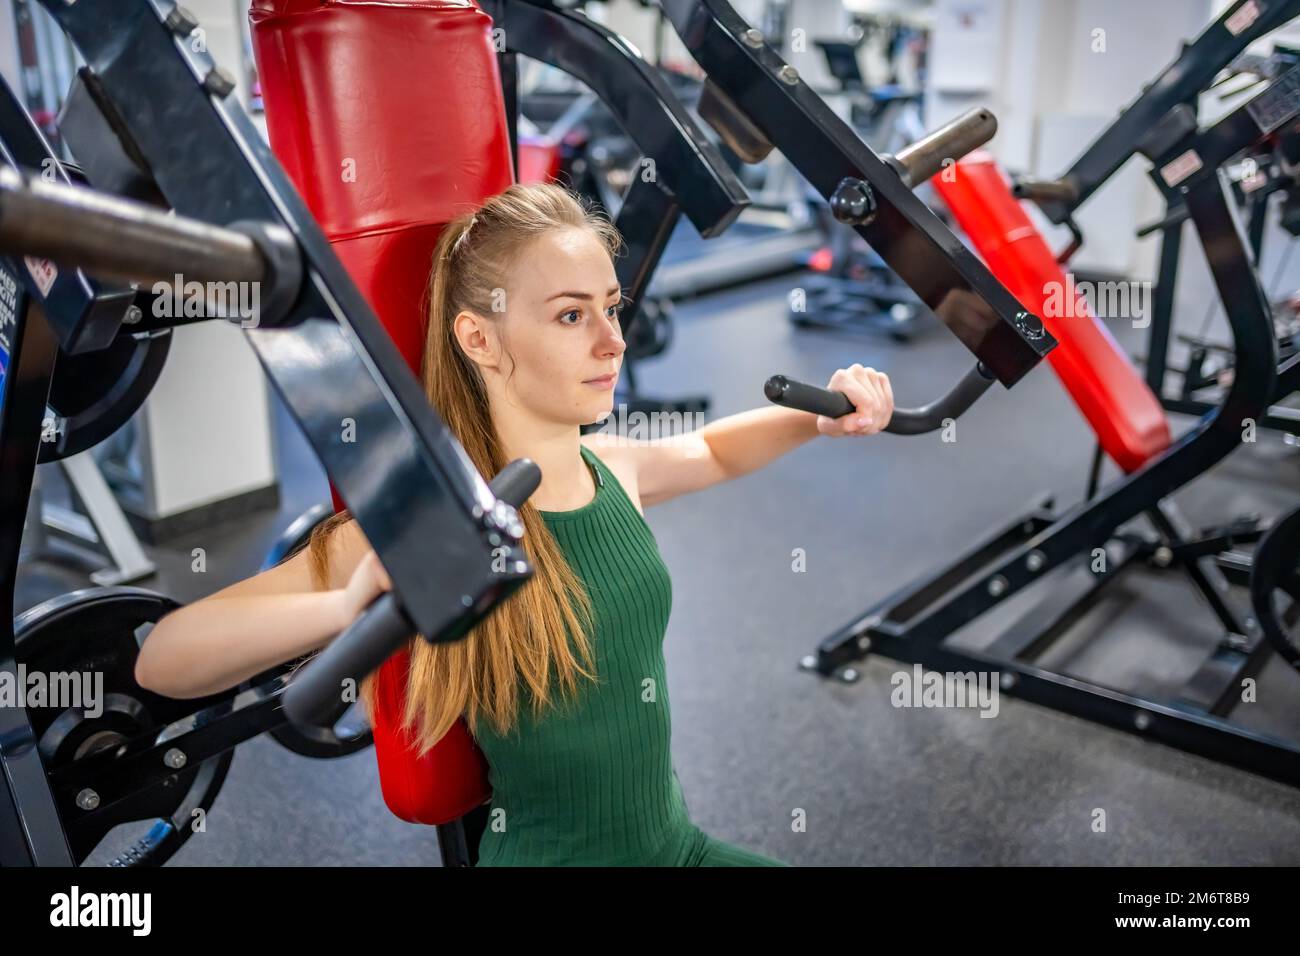 Une jeune femme s'entraîner sur un équipement de fitness à la salle de gym. Concept de santé, de sport et d'entraînement Banque D'Images